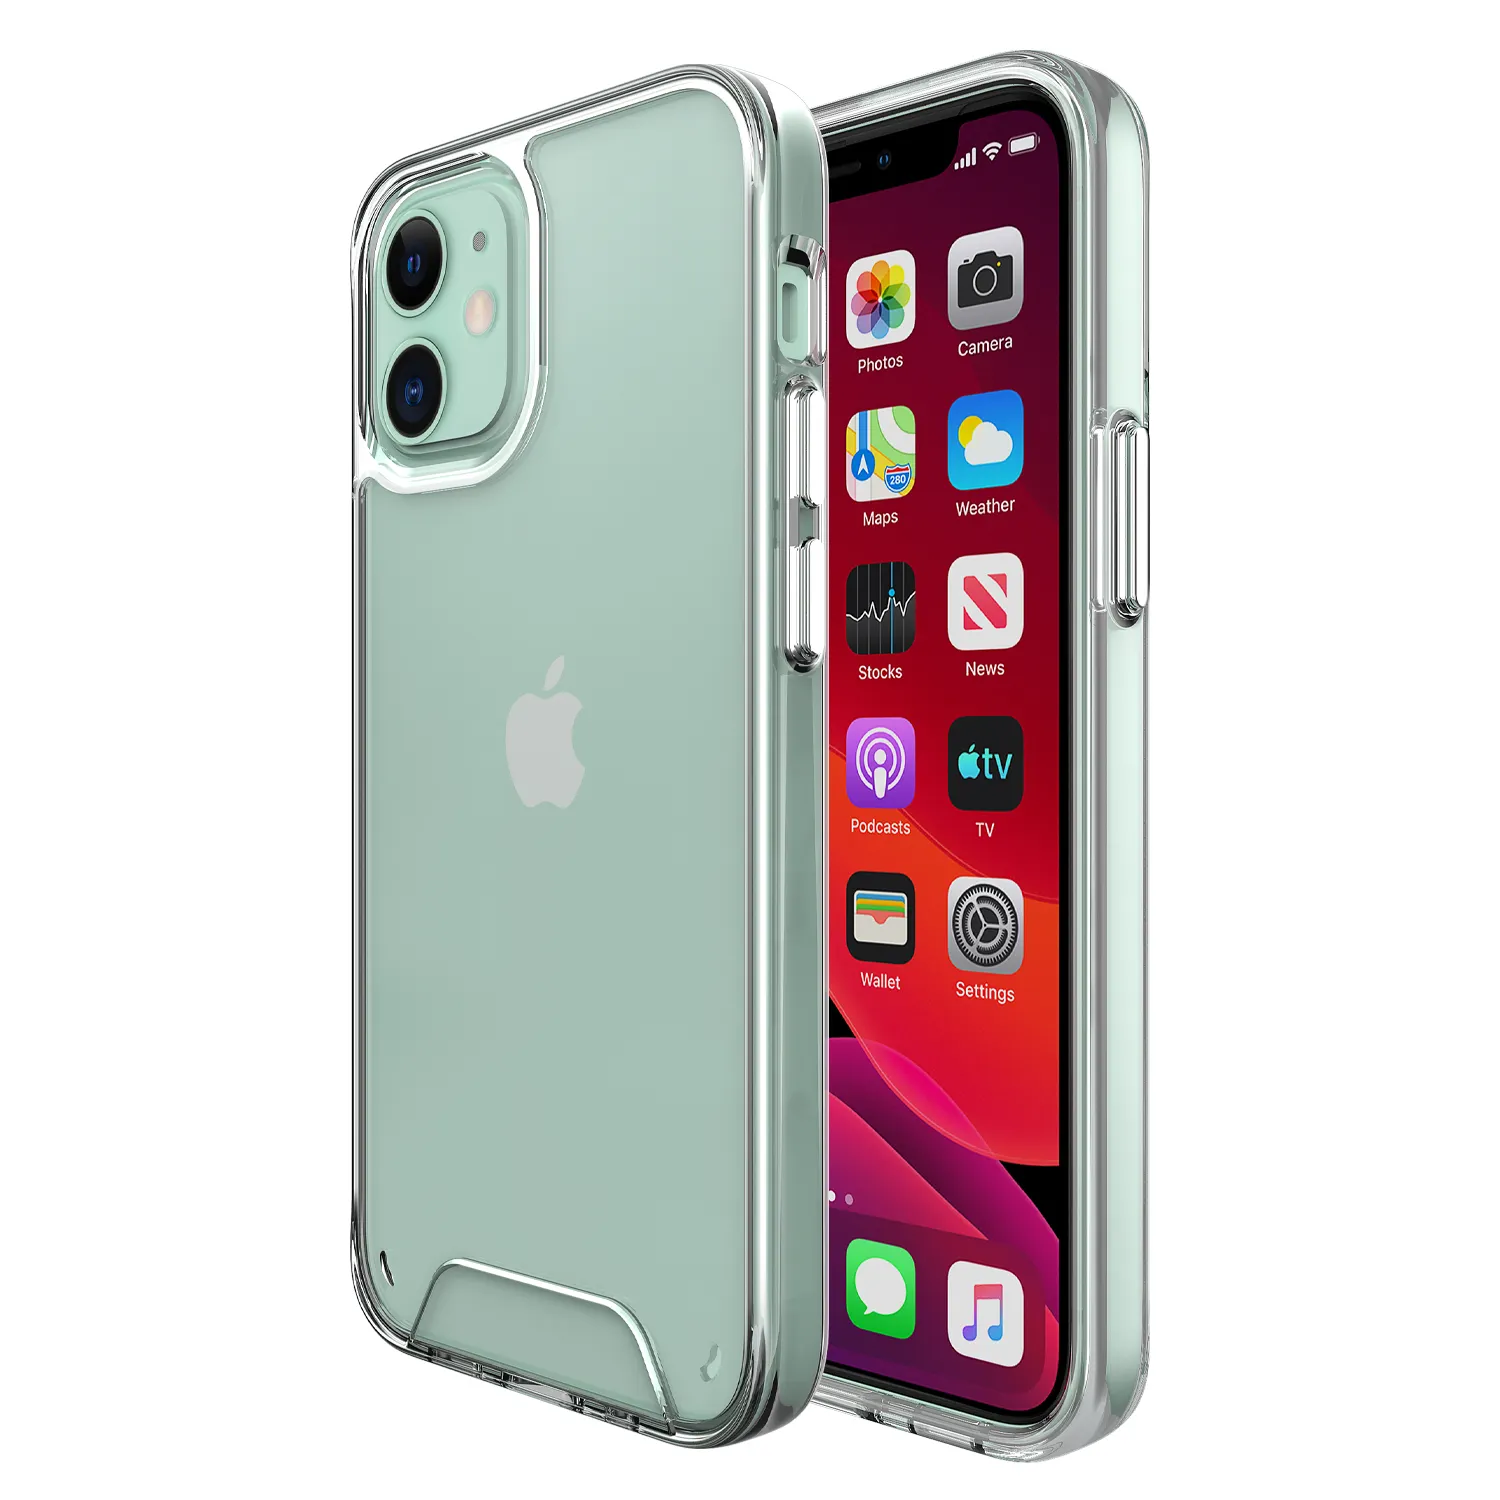 Airjacket capa de celular transparente, capa de celular com absorção de impacto para iphone 12